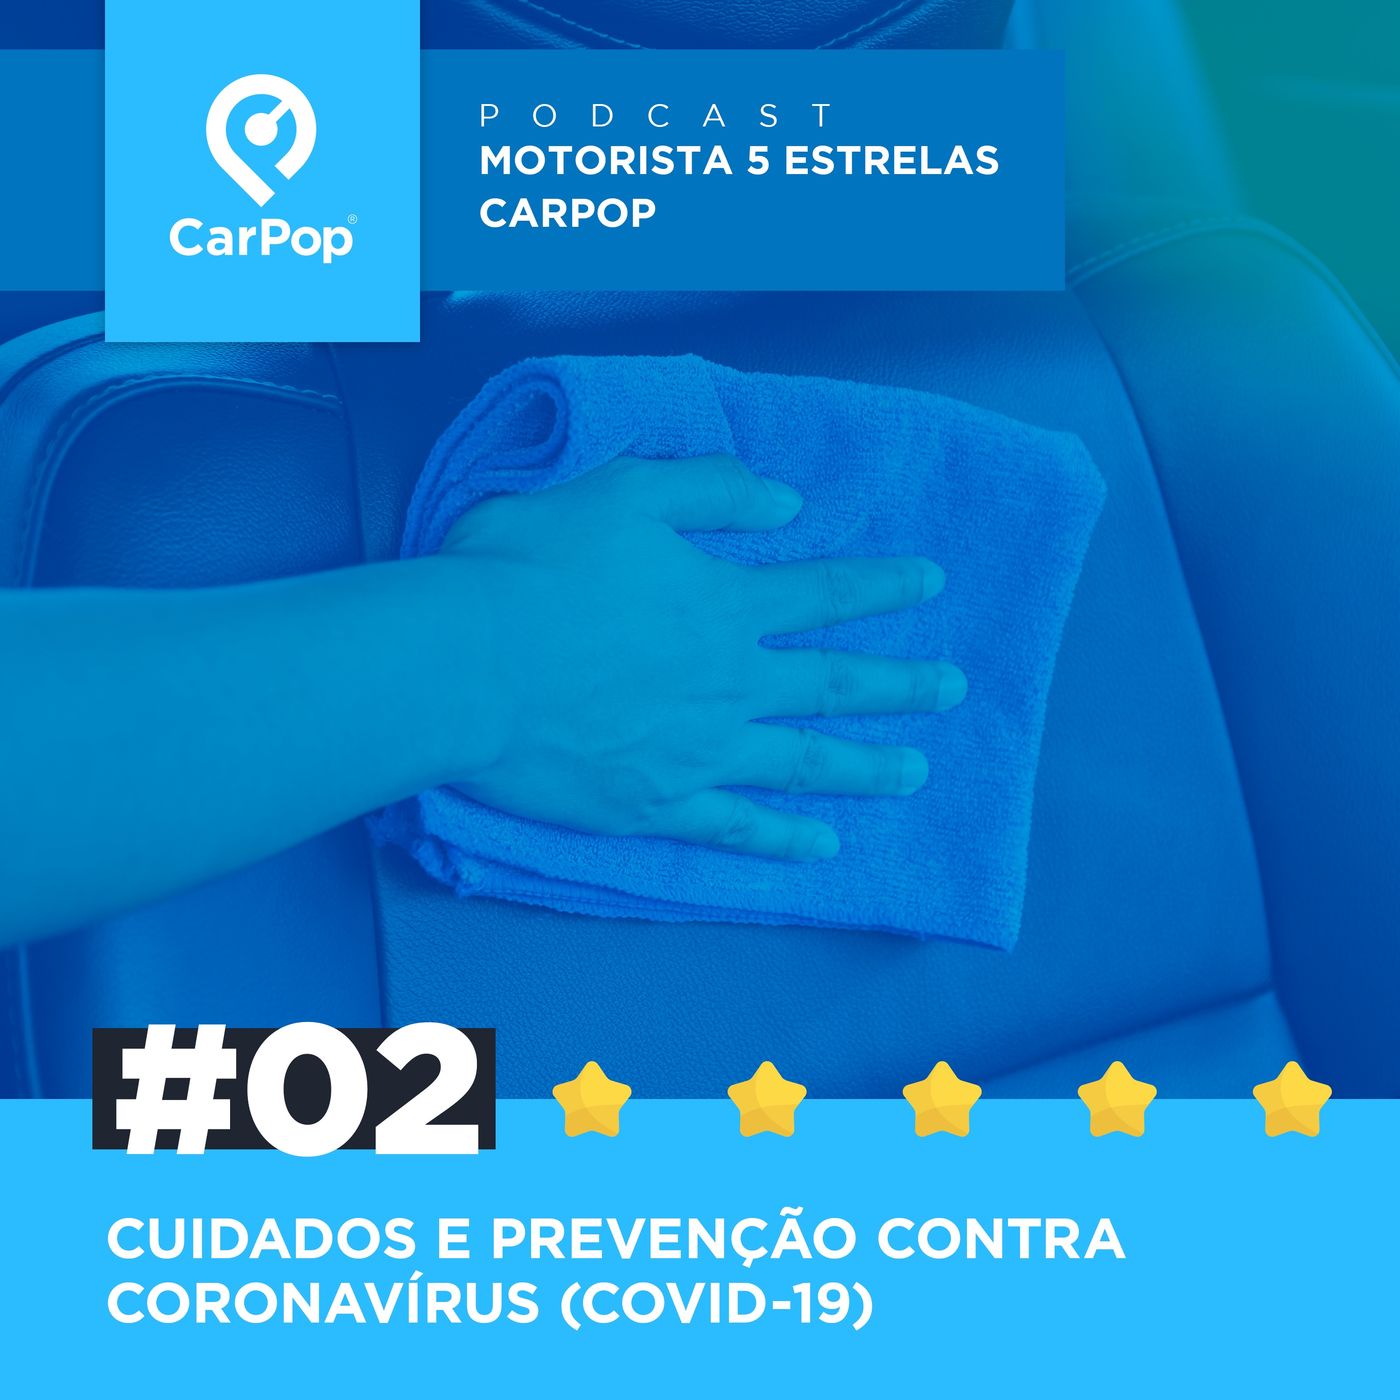 Motorista 5 Estrelas CarPop #02 - Cuidados e prevenção contra COVID-19 (Coronavírus)